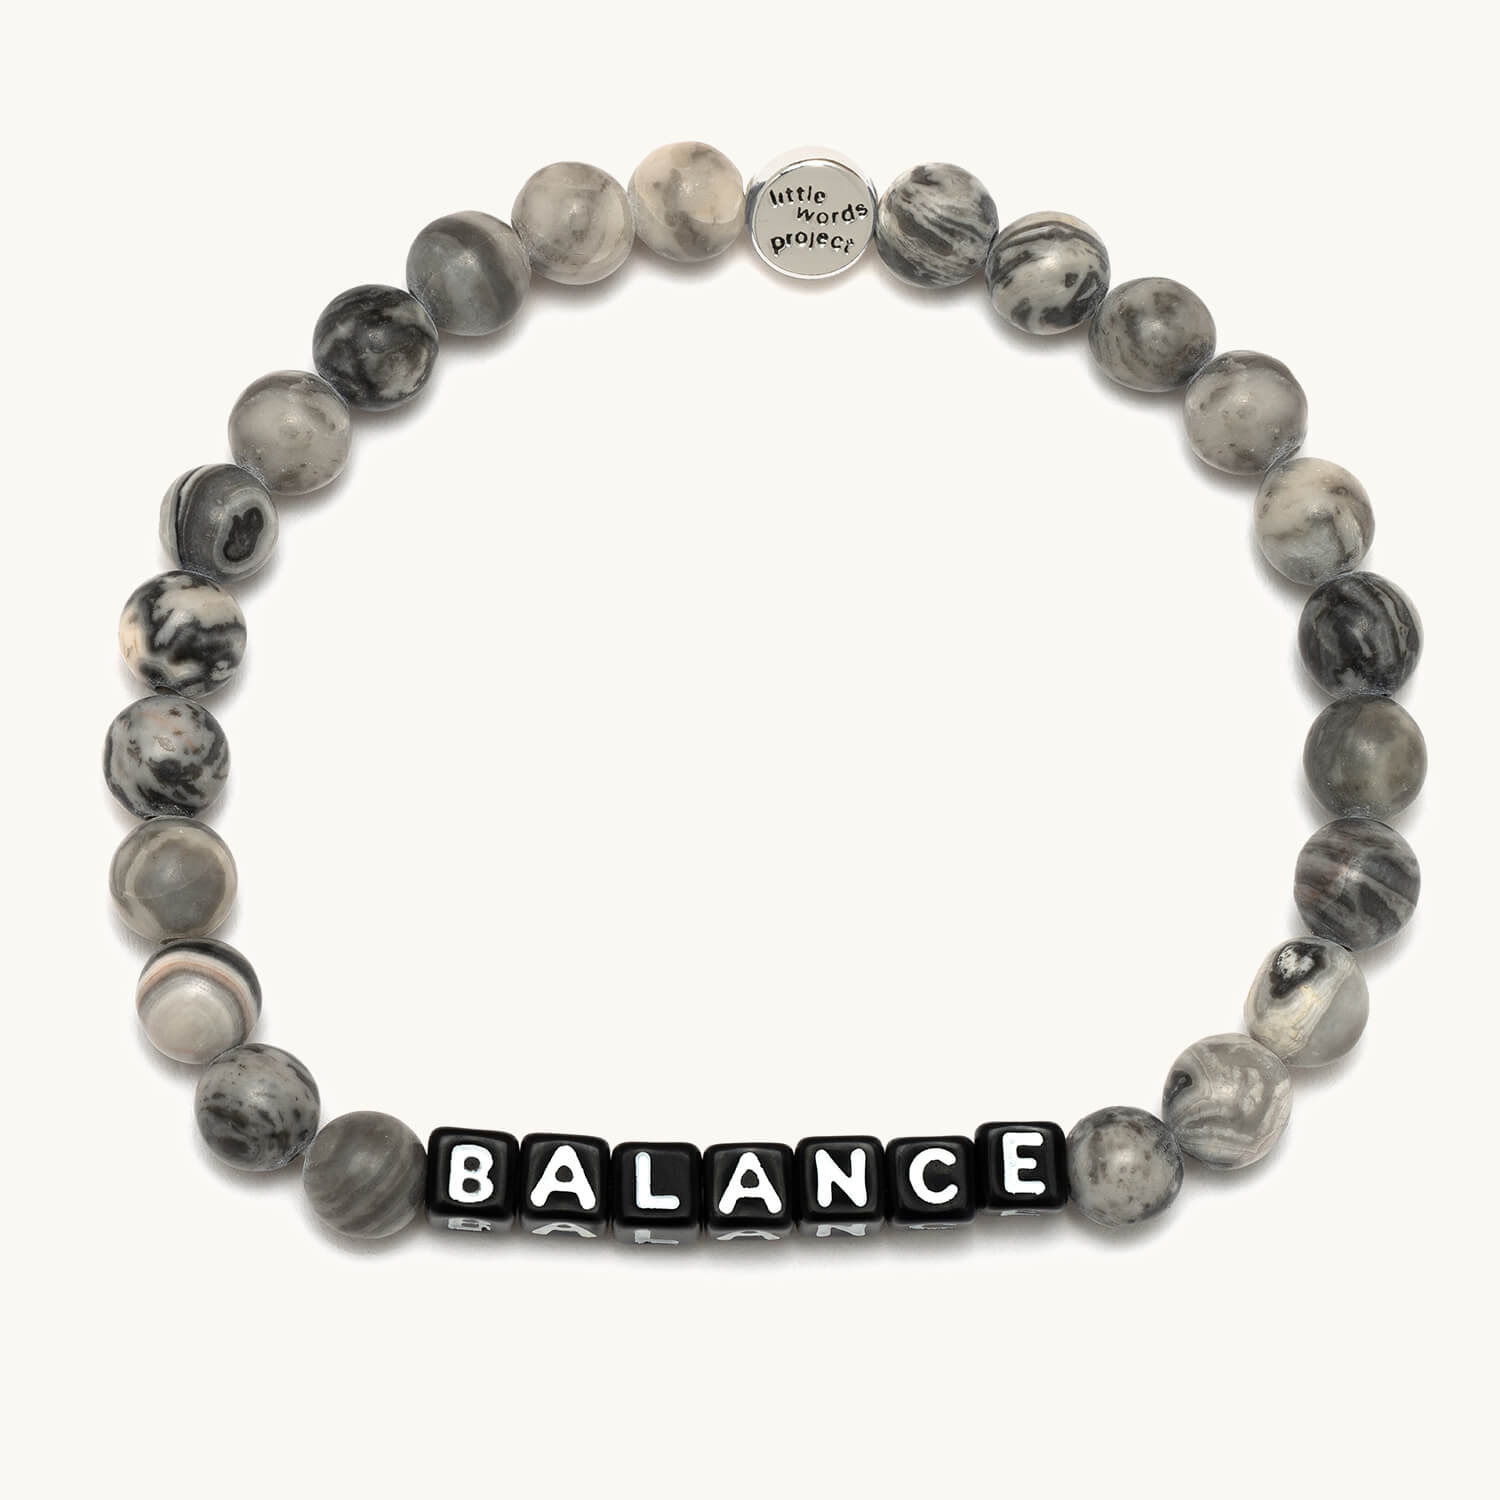 Balance- Little Words Project Bracelet 